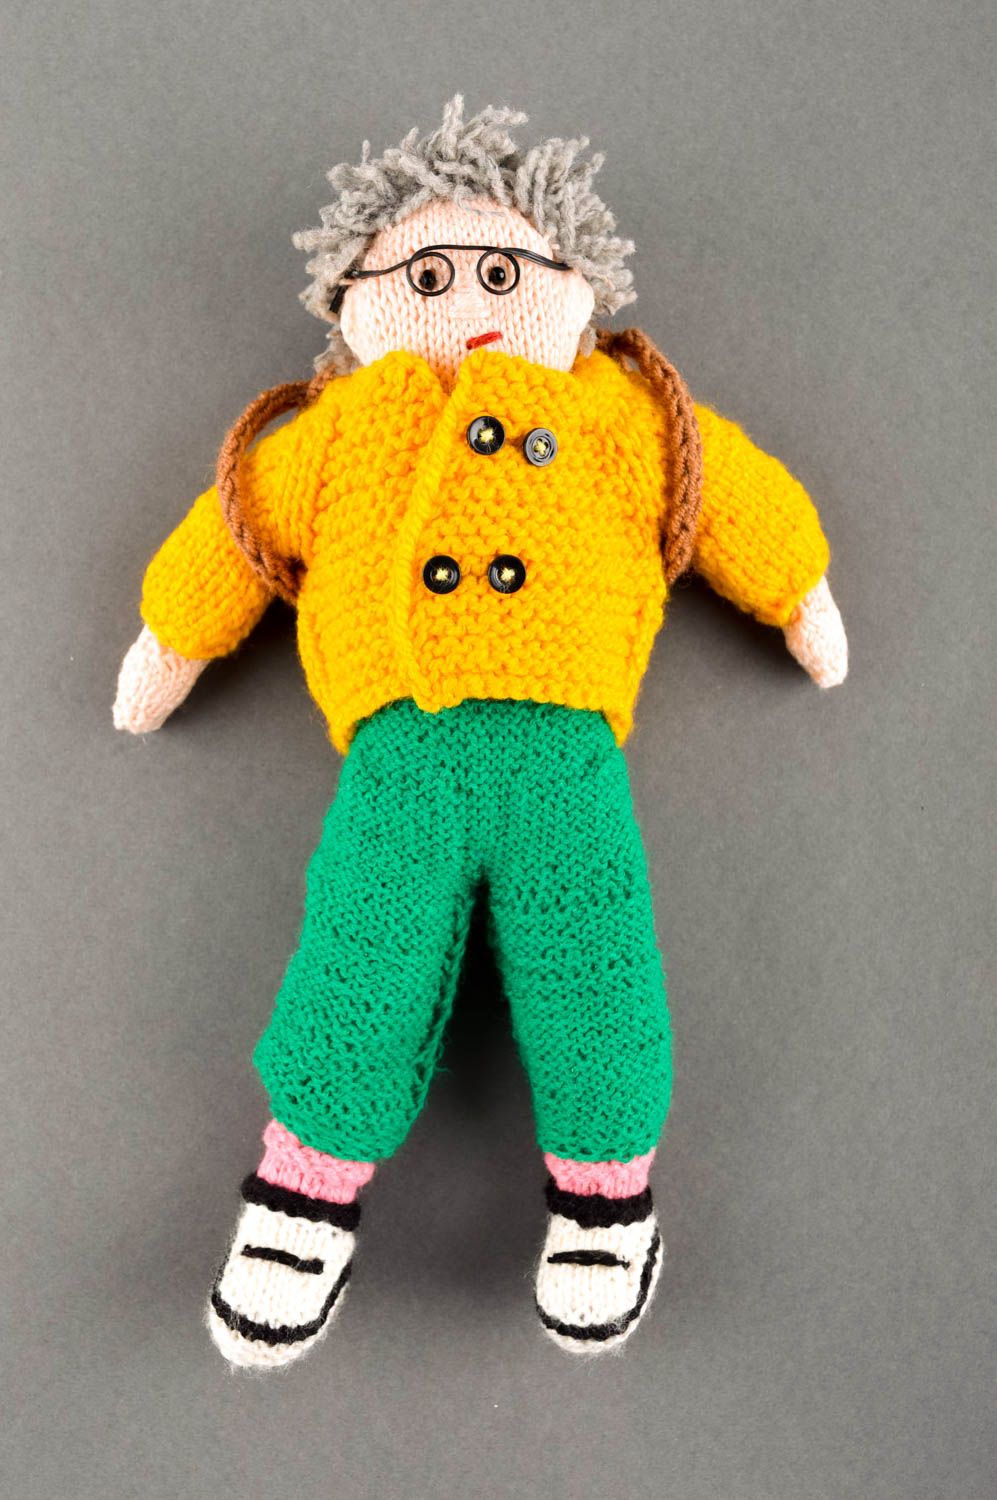 Handmade doll crocheted doll stuffed toy for babies nursery decor ideas photo 1